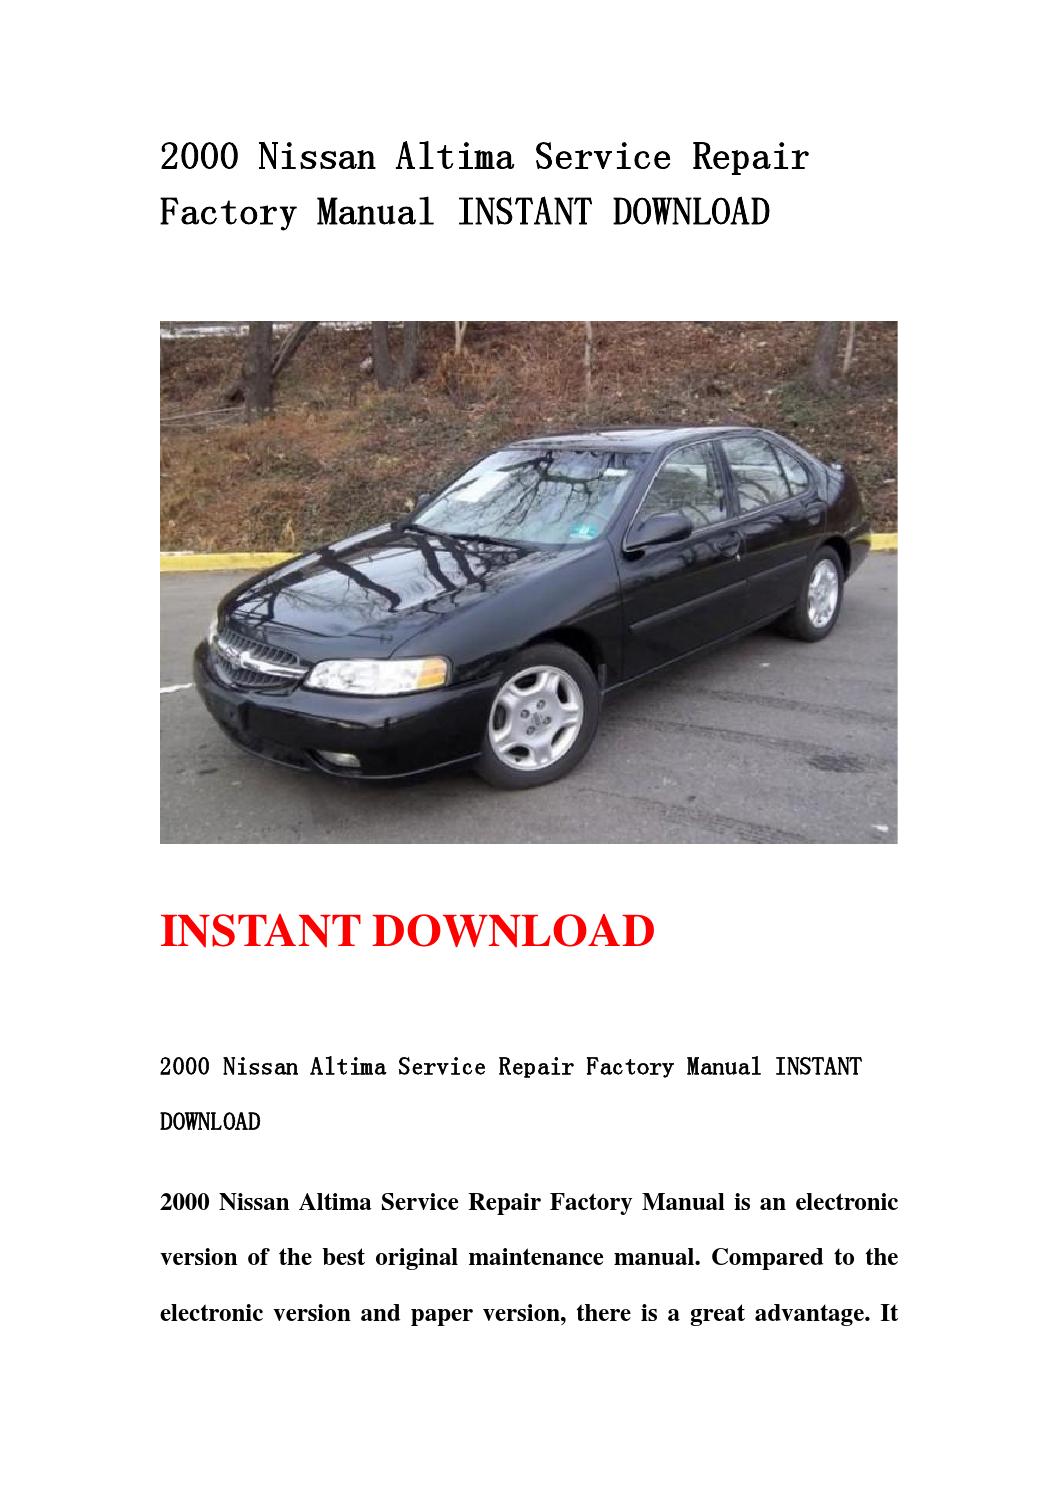 Nissan altima repair manual free